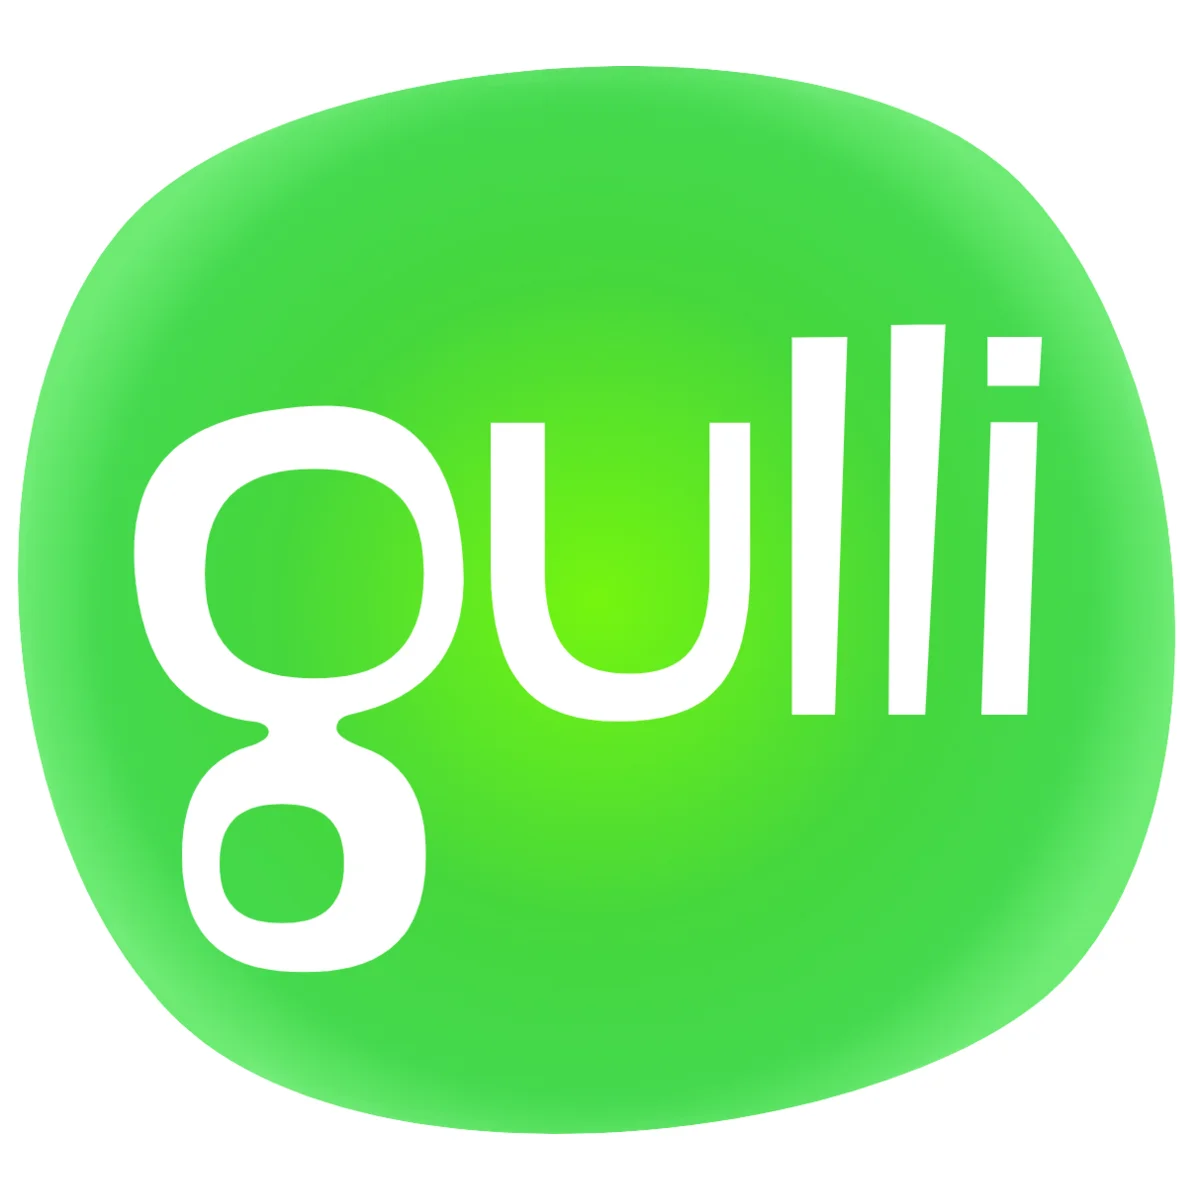 Gulli TV